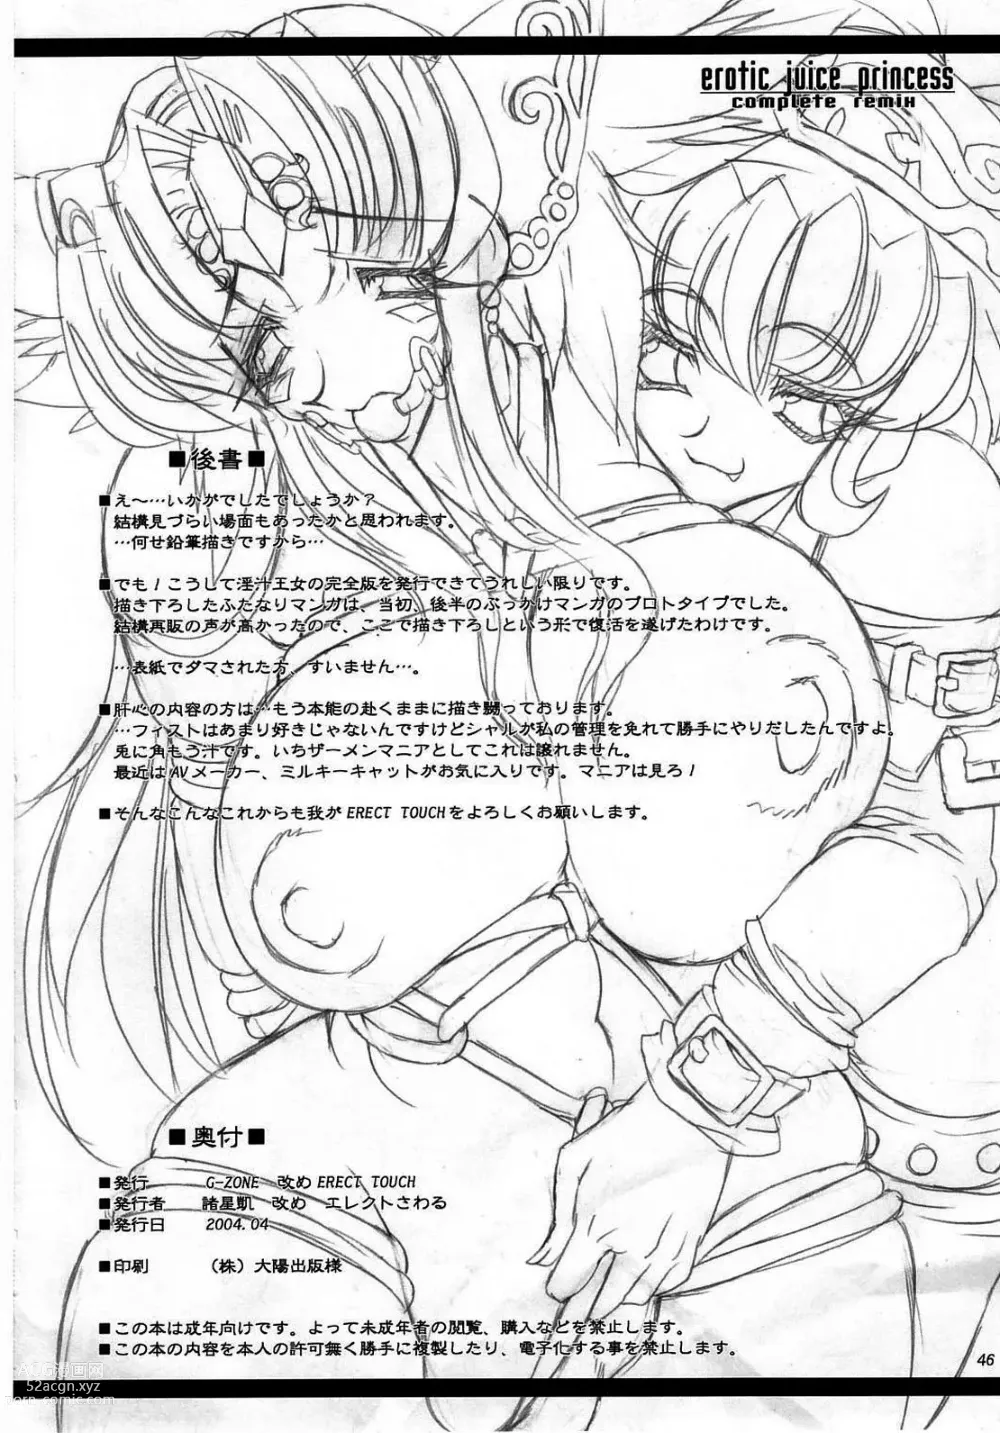 Page 177 of doujinshi Injiru Oujo COMPLETE REMIX ~Chijoku noRinkan Choukyou Shokushu Zeme~